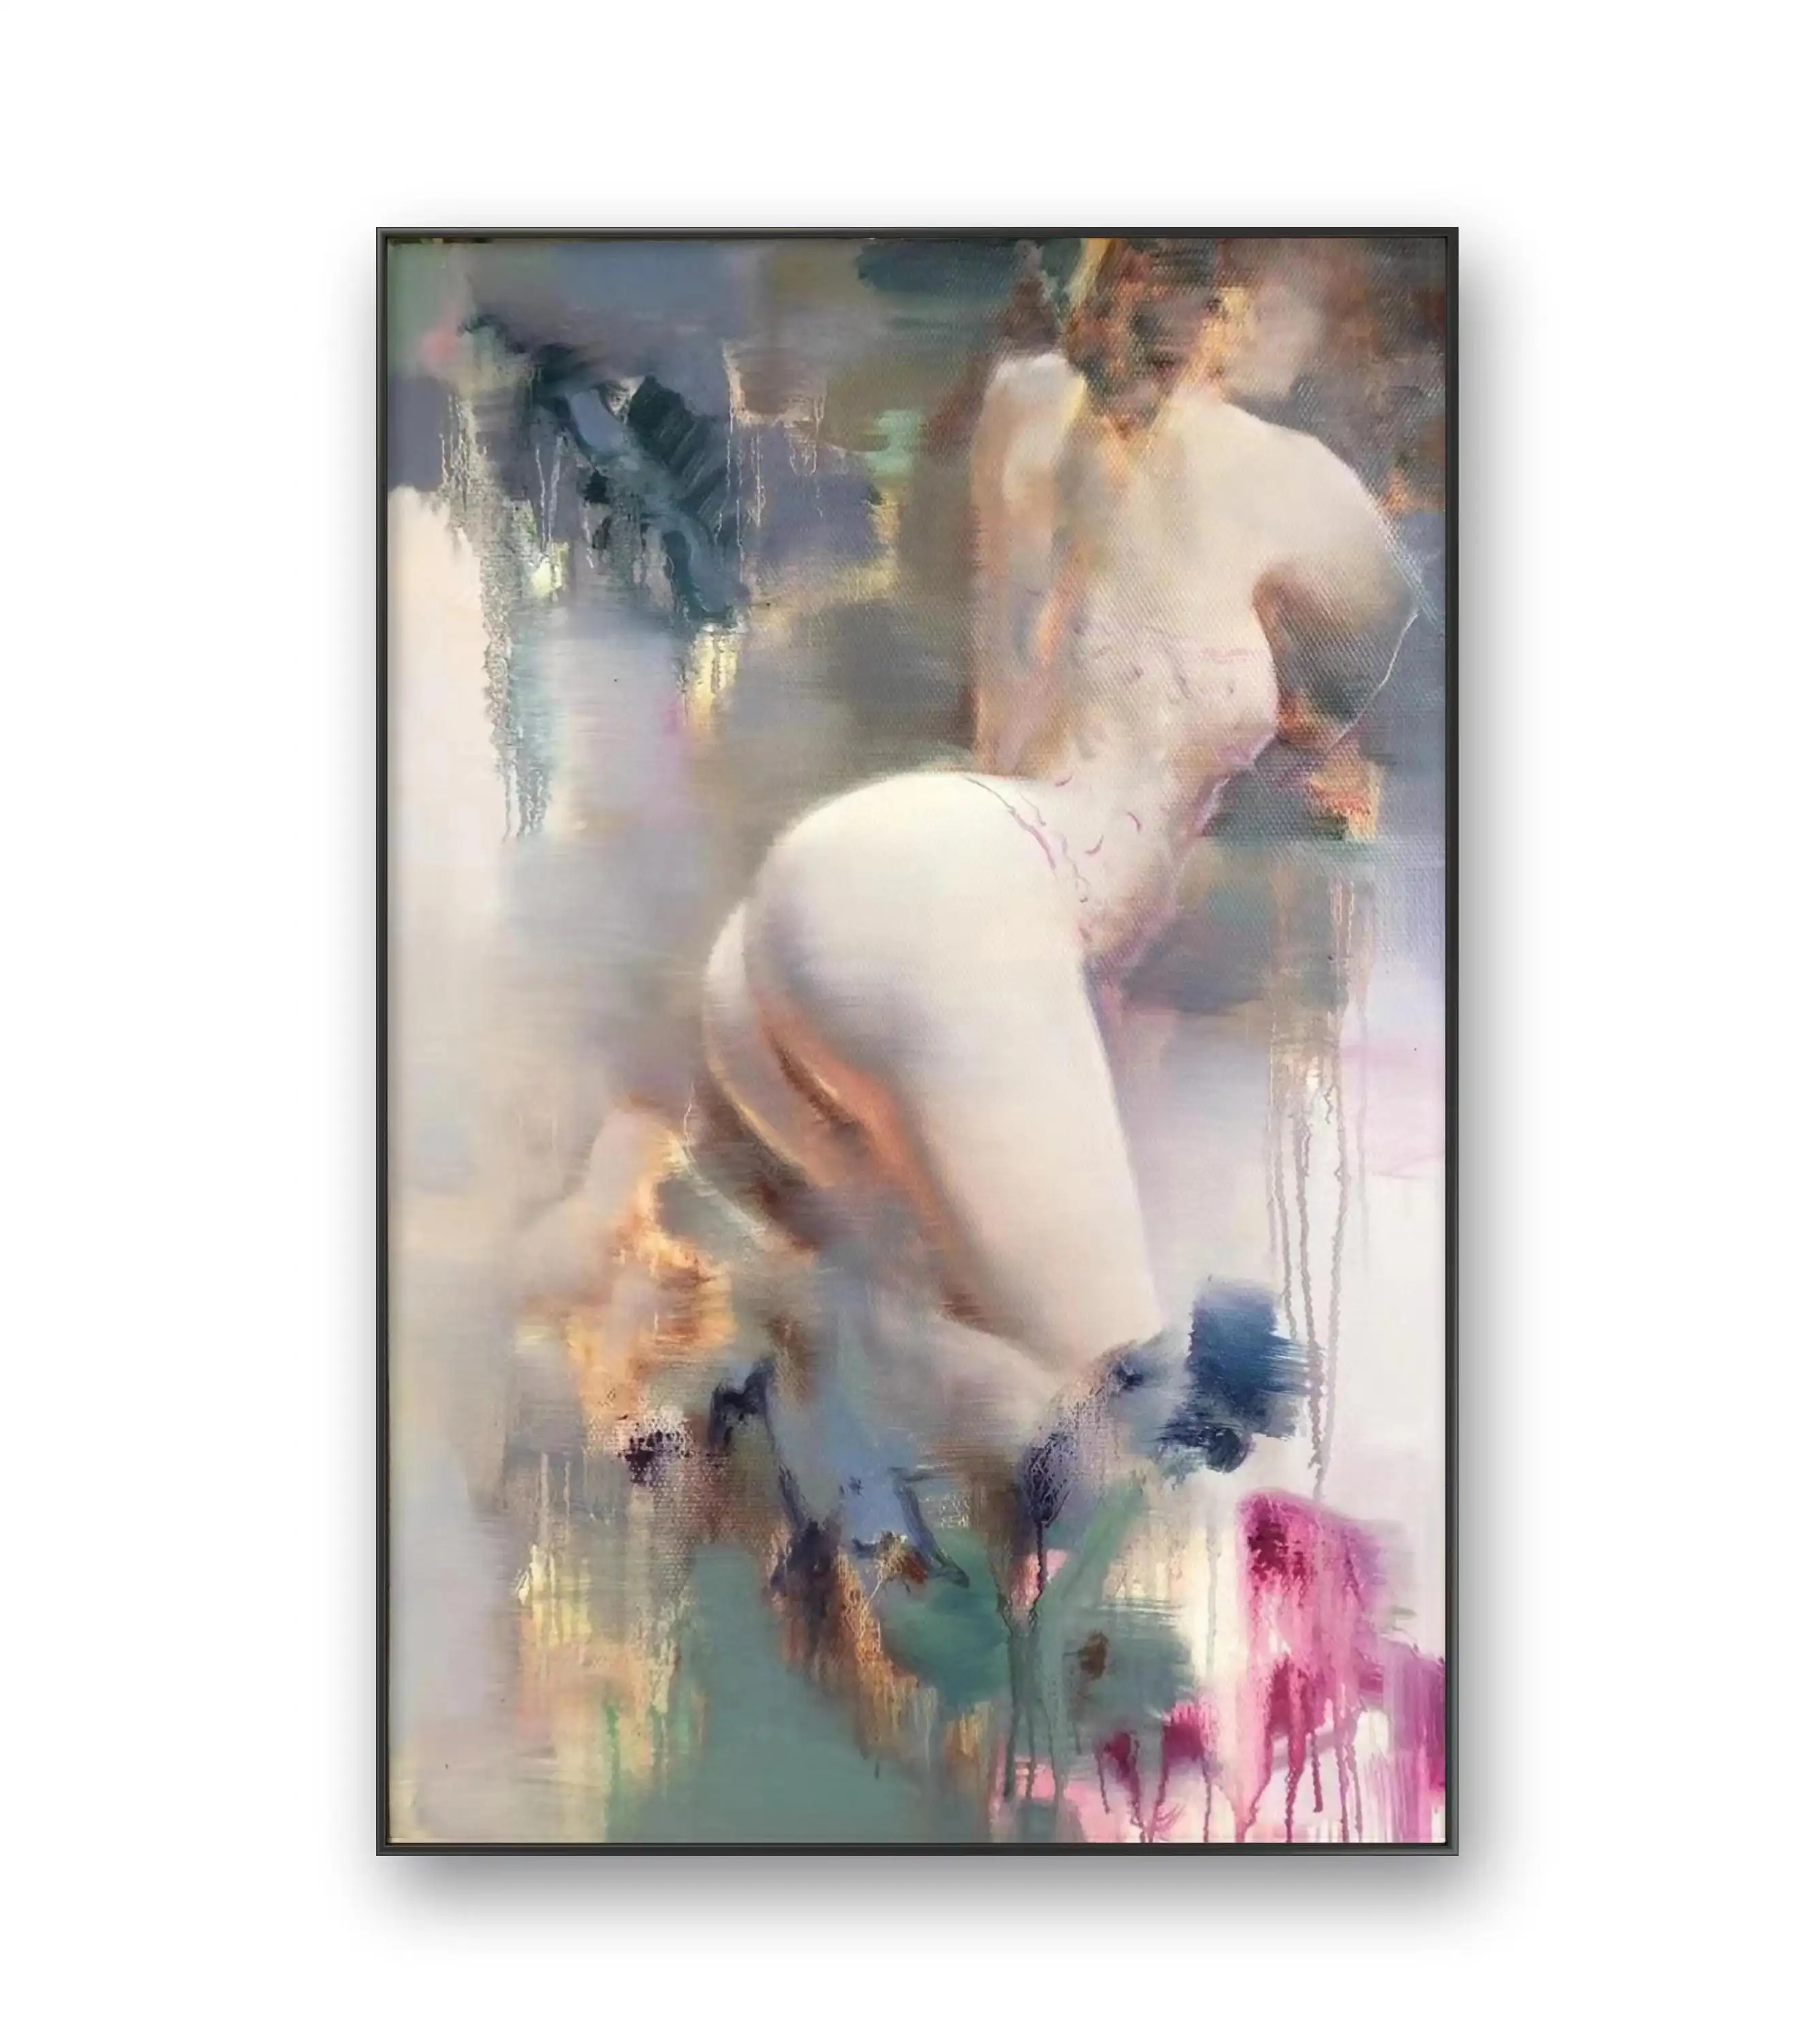 प्रसिद्ध चित्रकारों द्वारा निर्मित शुद्ध हस्तनिर्मित पेंटिंग फैशनेबल चित्र गुणवत्ता वाली लोकप्रिय शैली नग्न महिला पेंटिंग